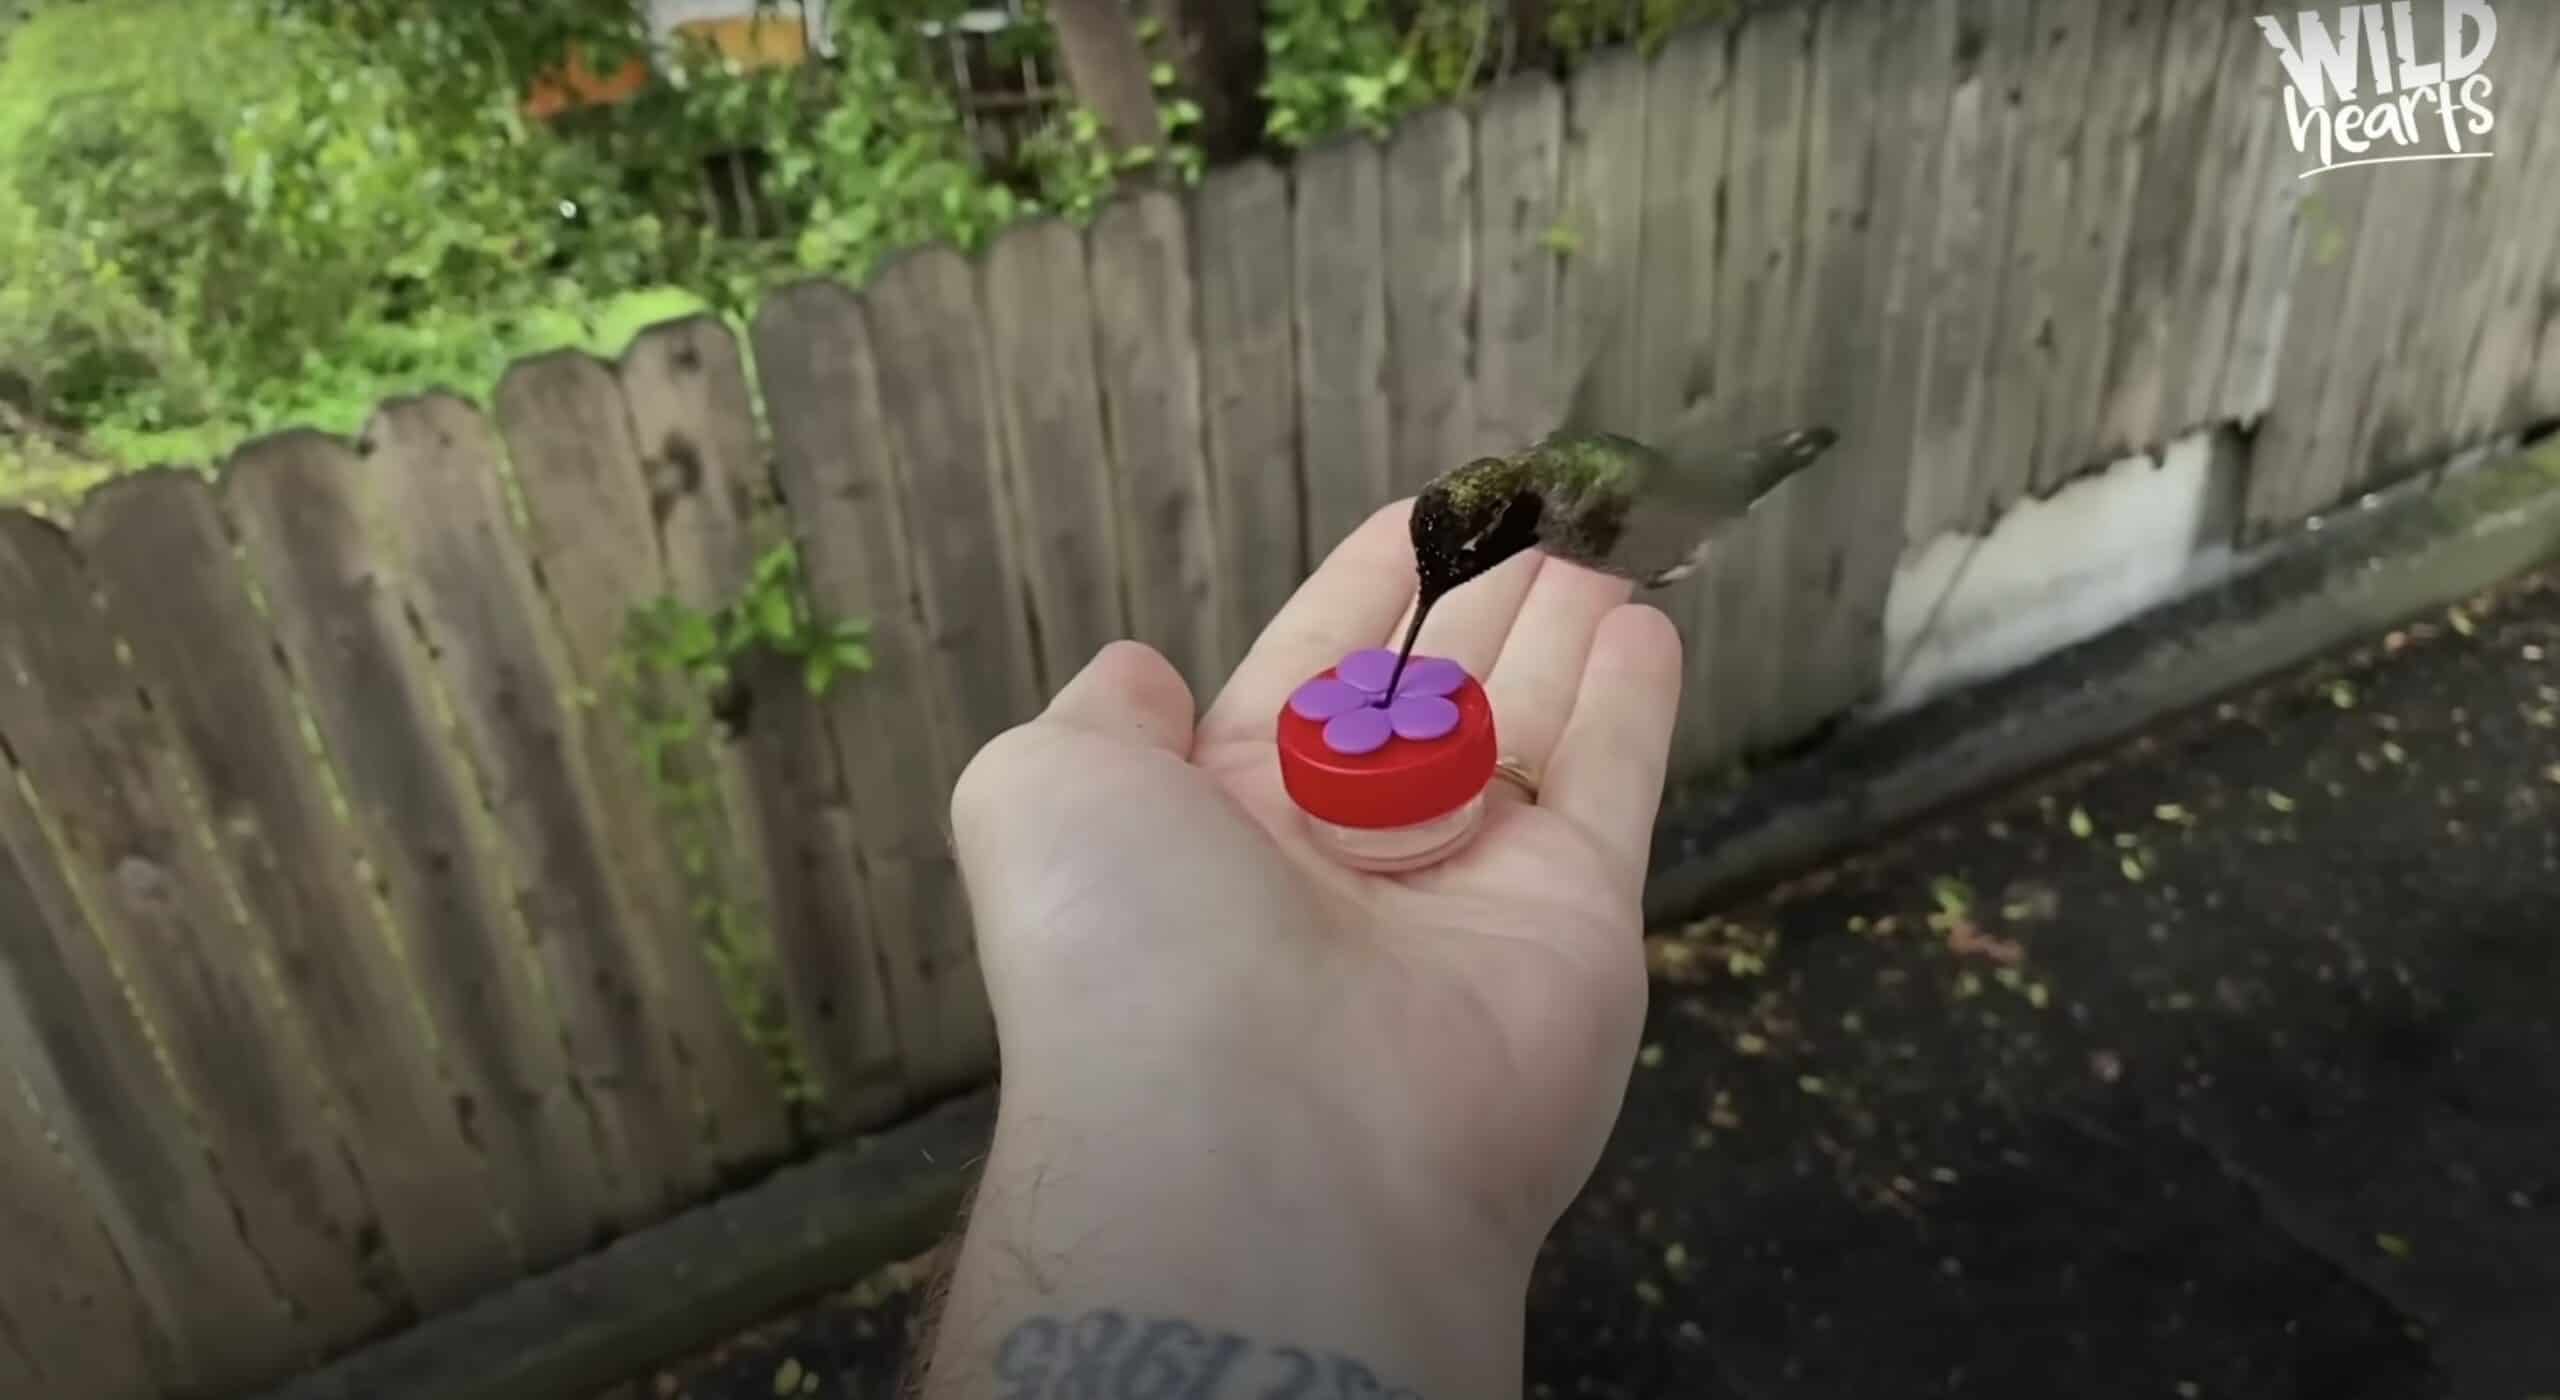 Video de la visita del colibrí: encantador y conmovedor